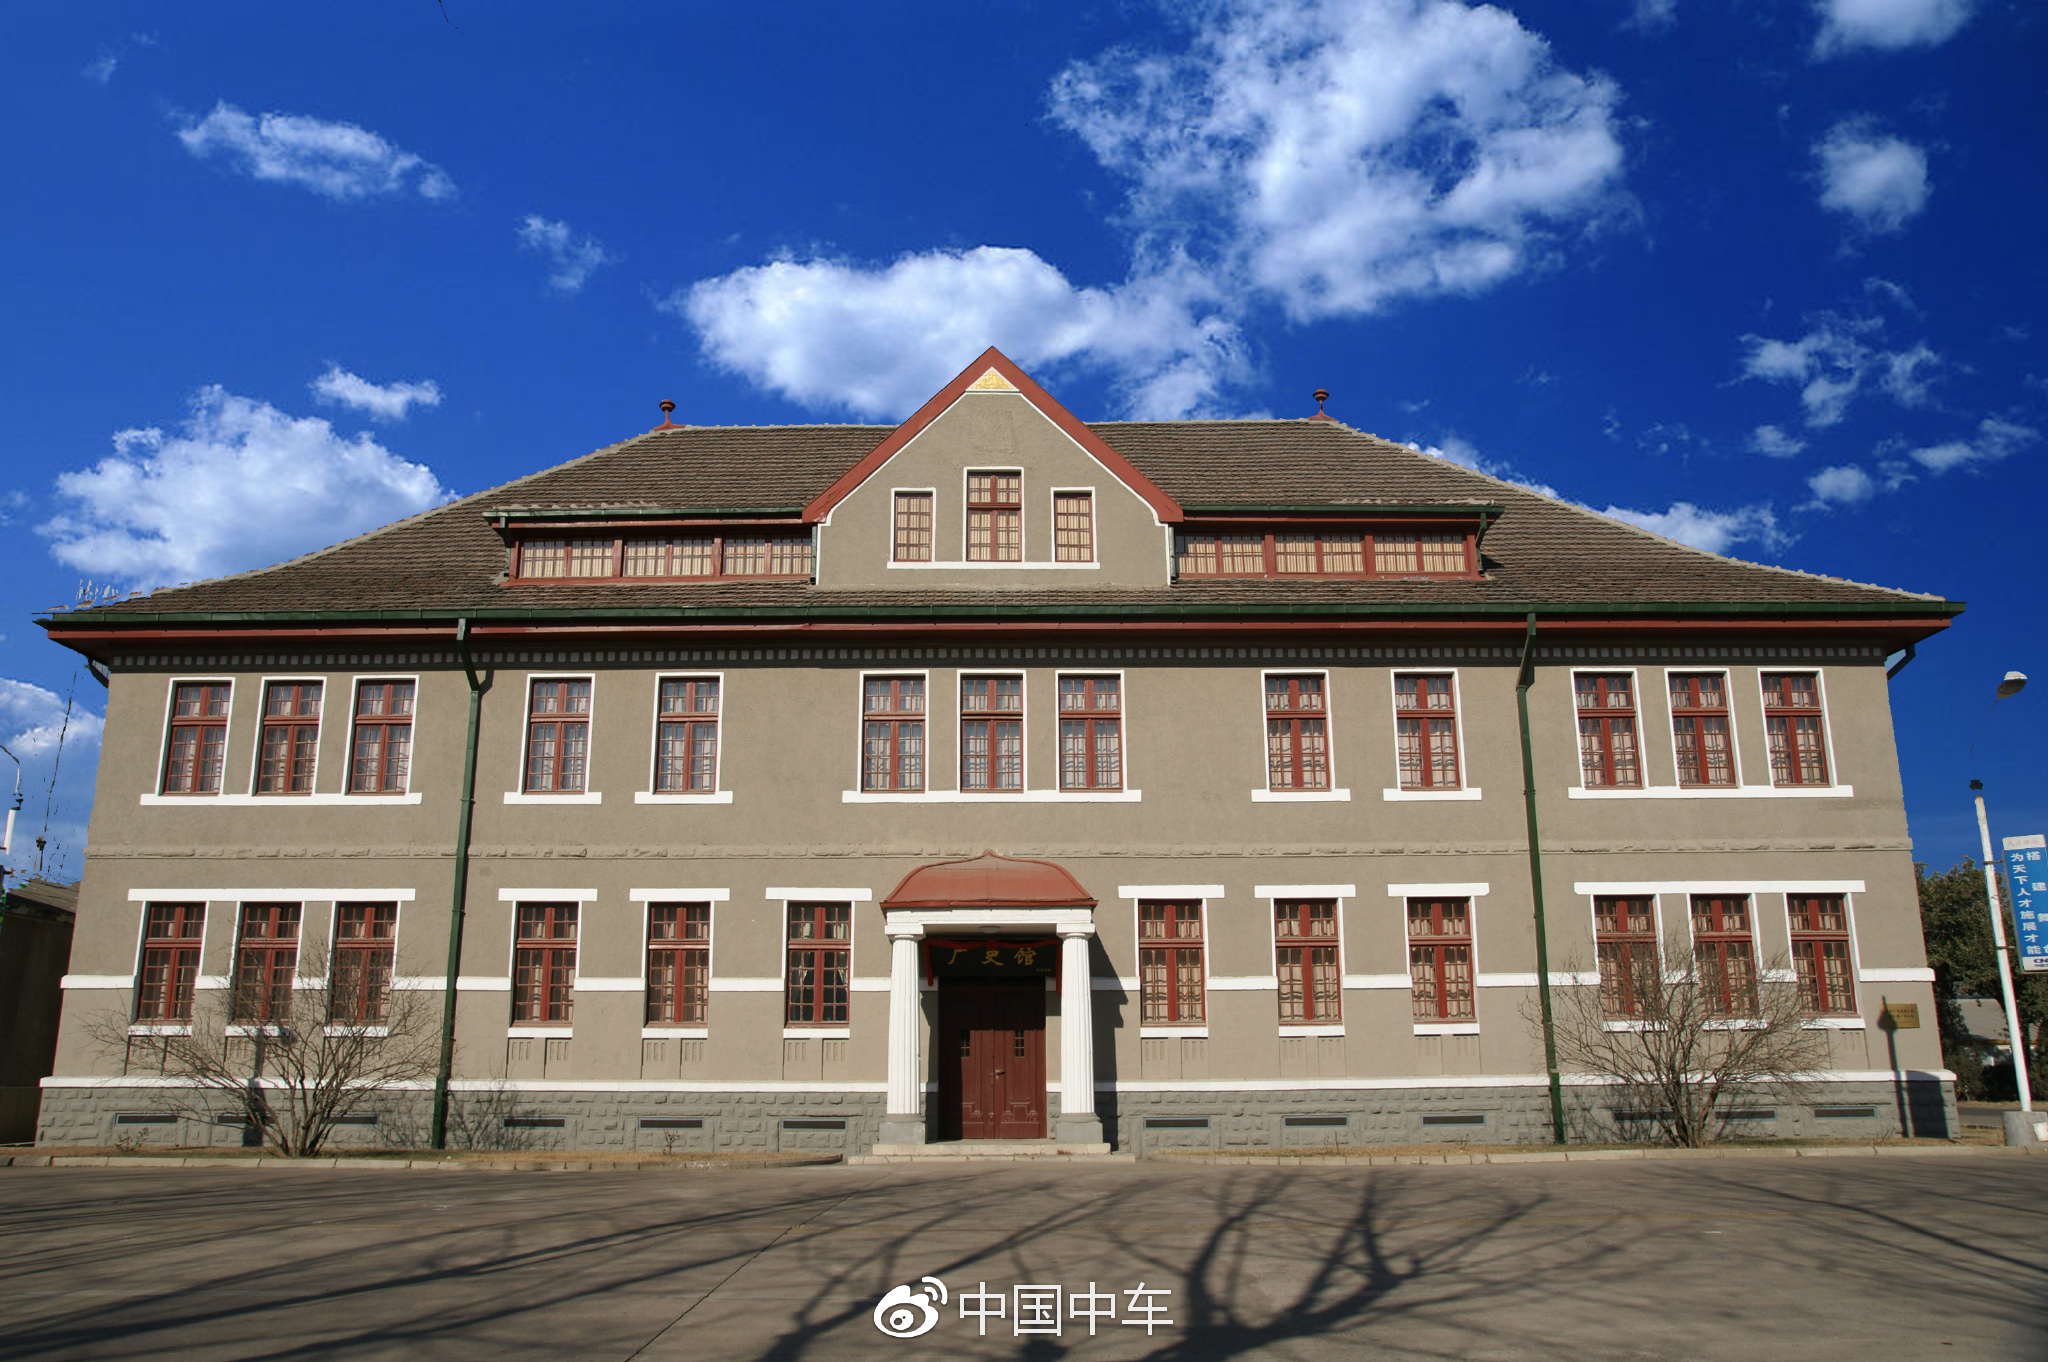 这是中车山东公司首任厂长、德国人道格迷里的办公大楼，始建于1910年。